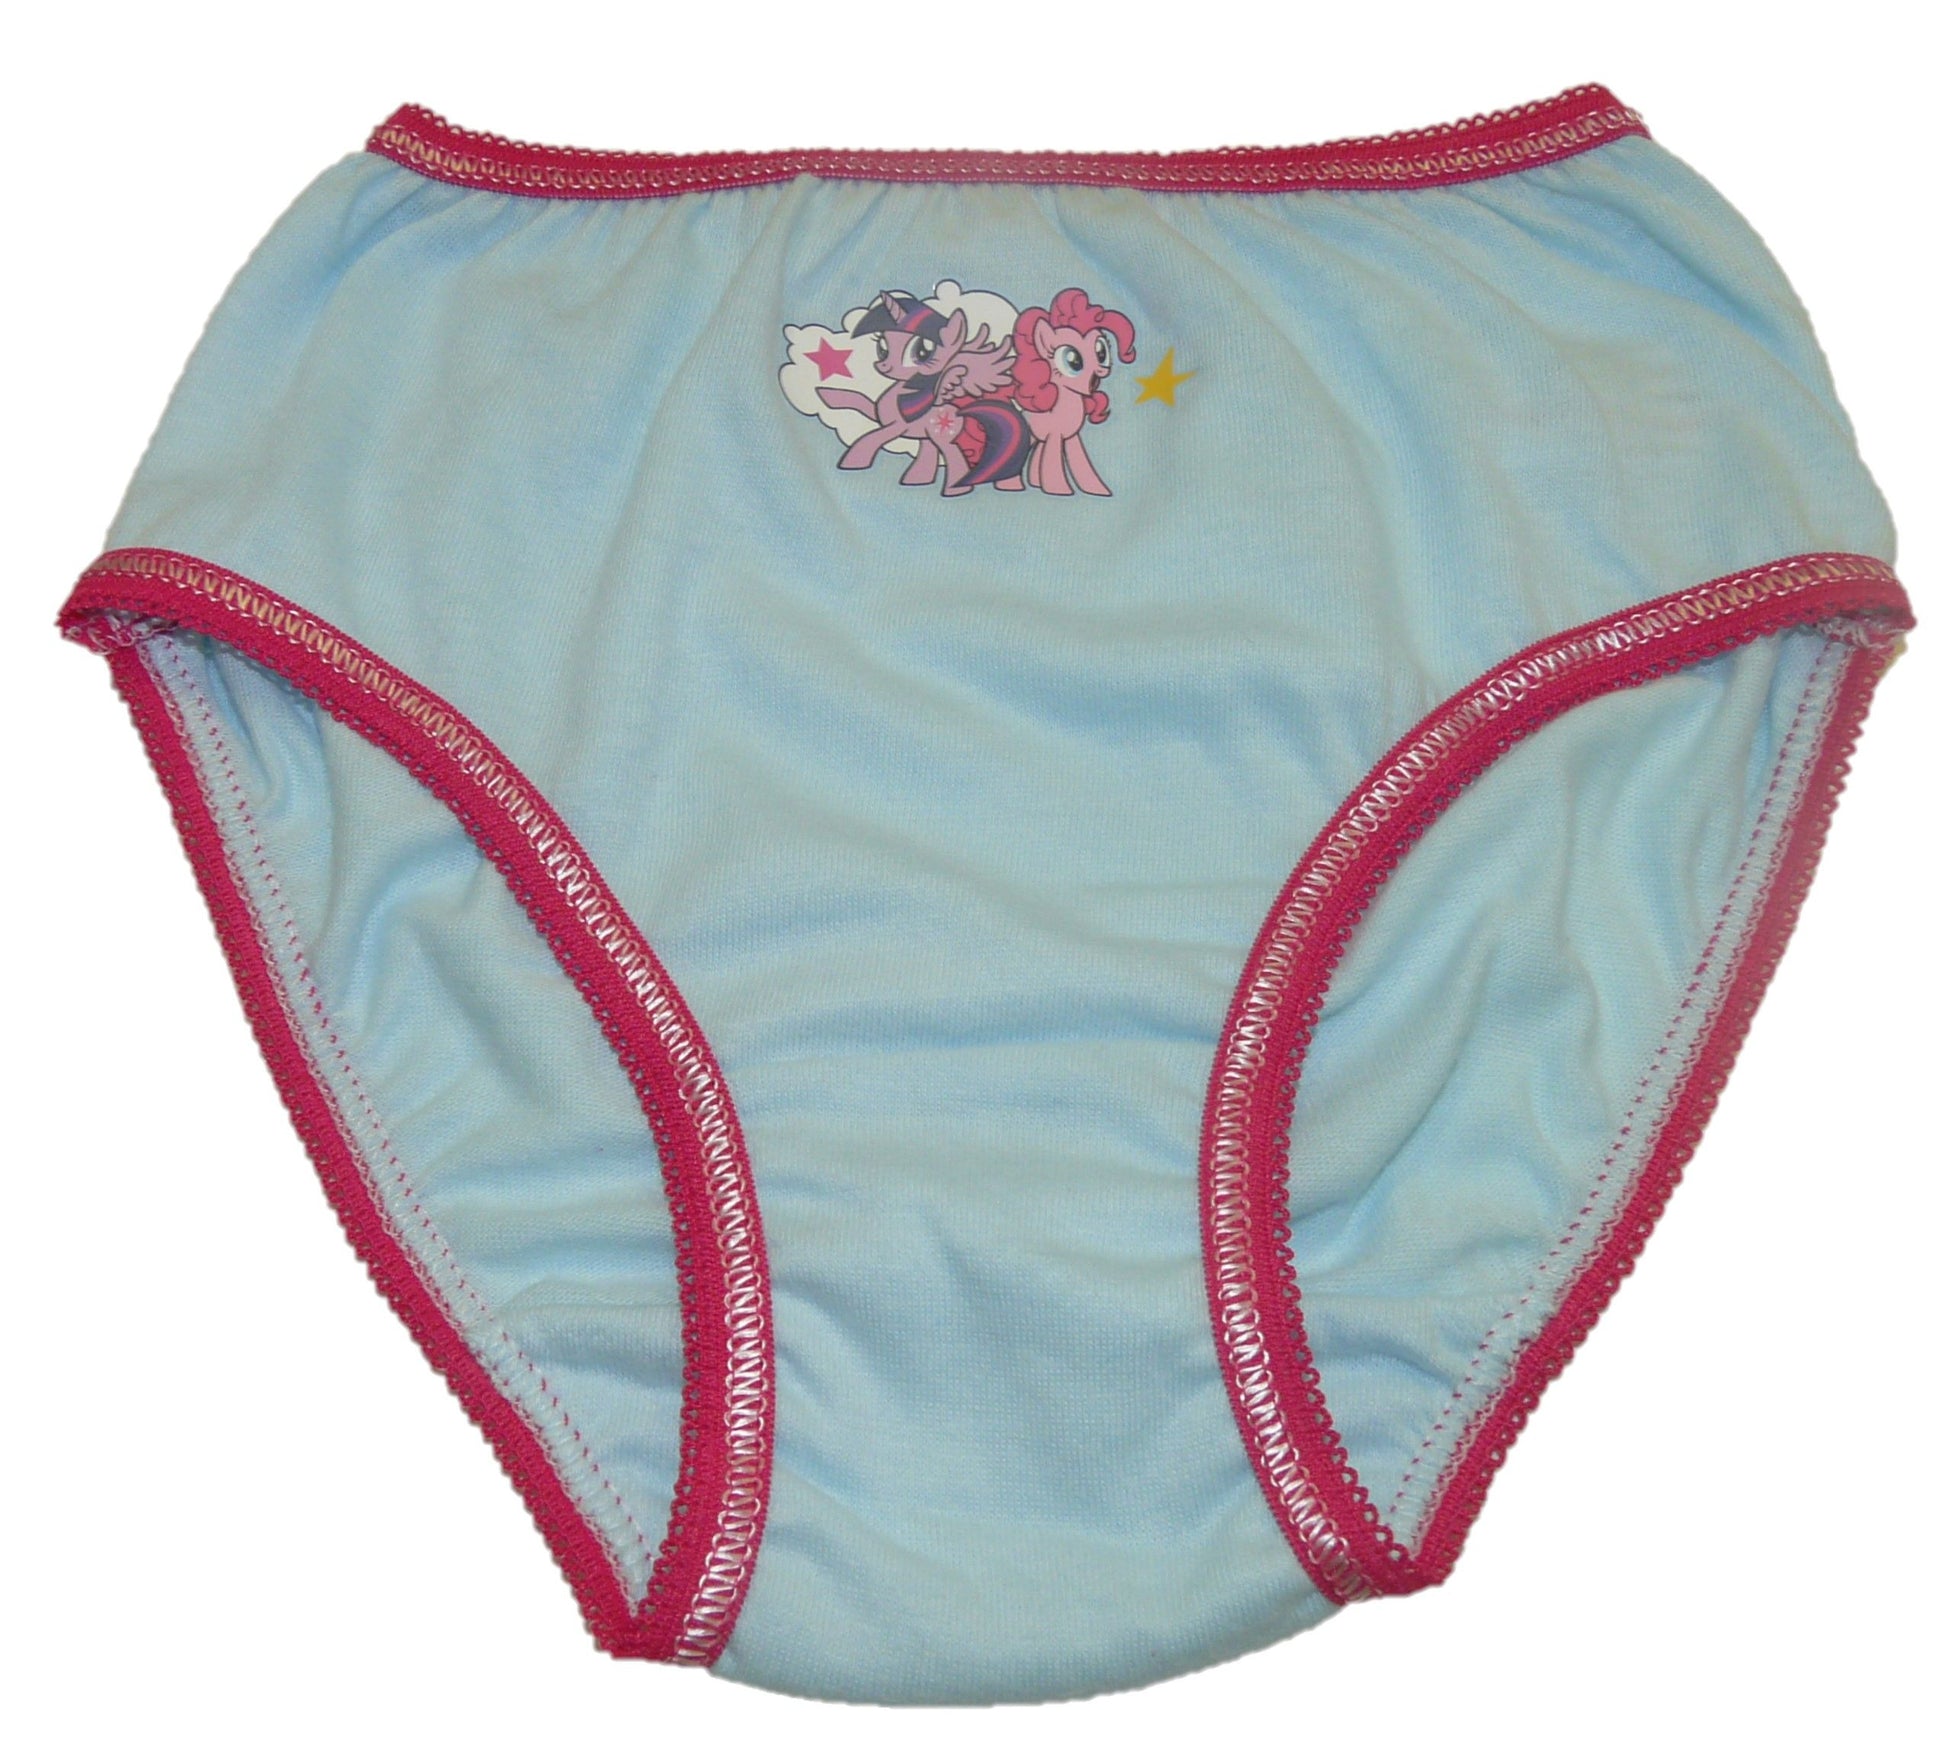 My Little Pony - Underwear